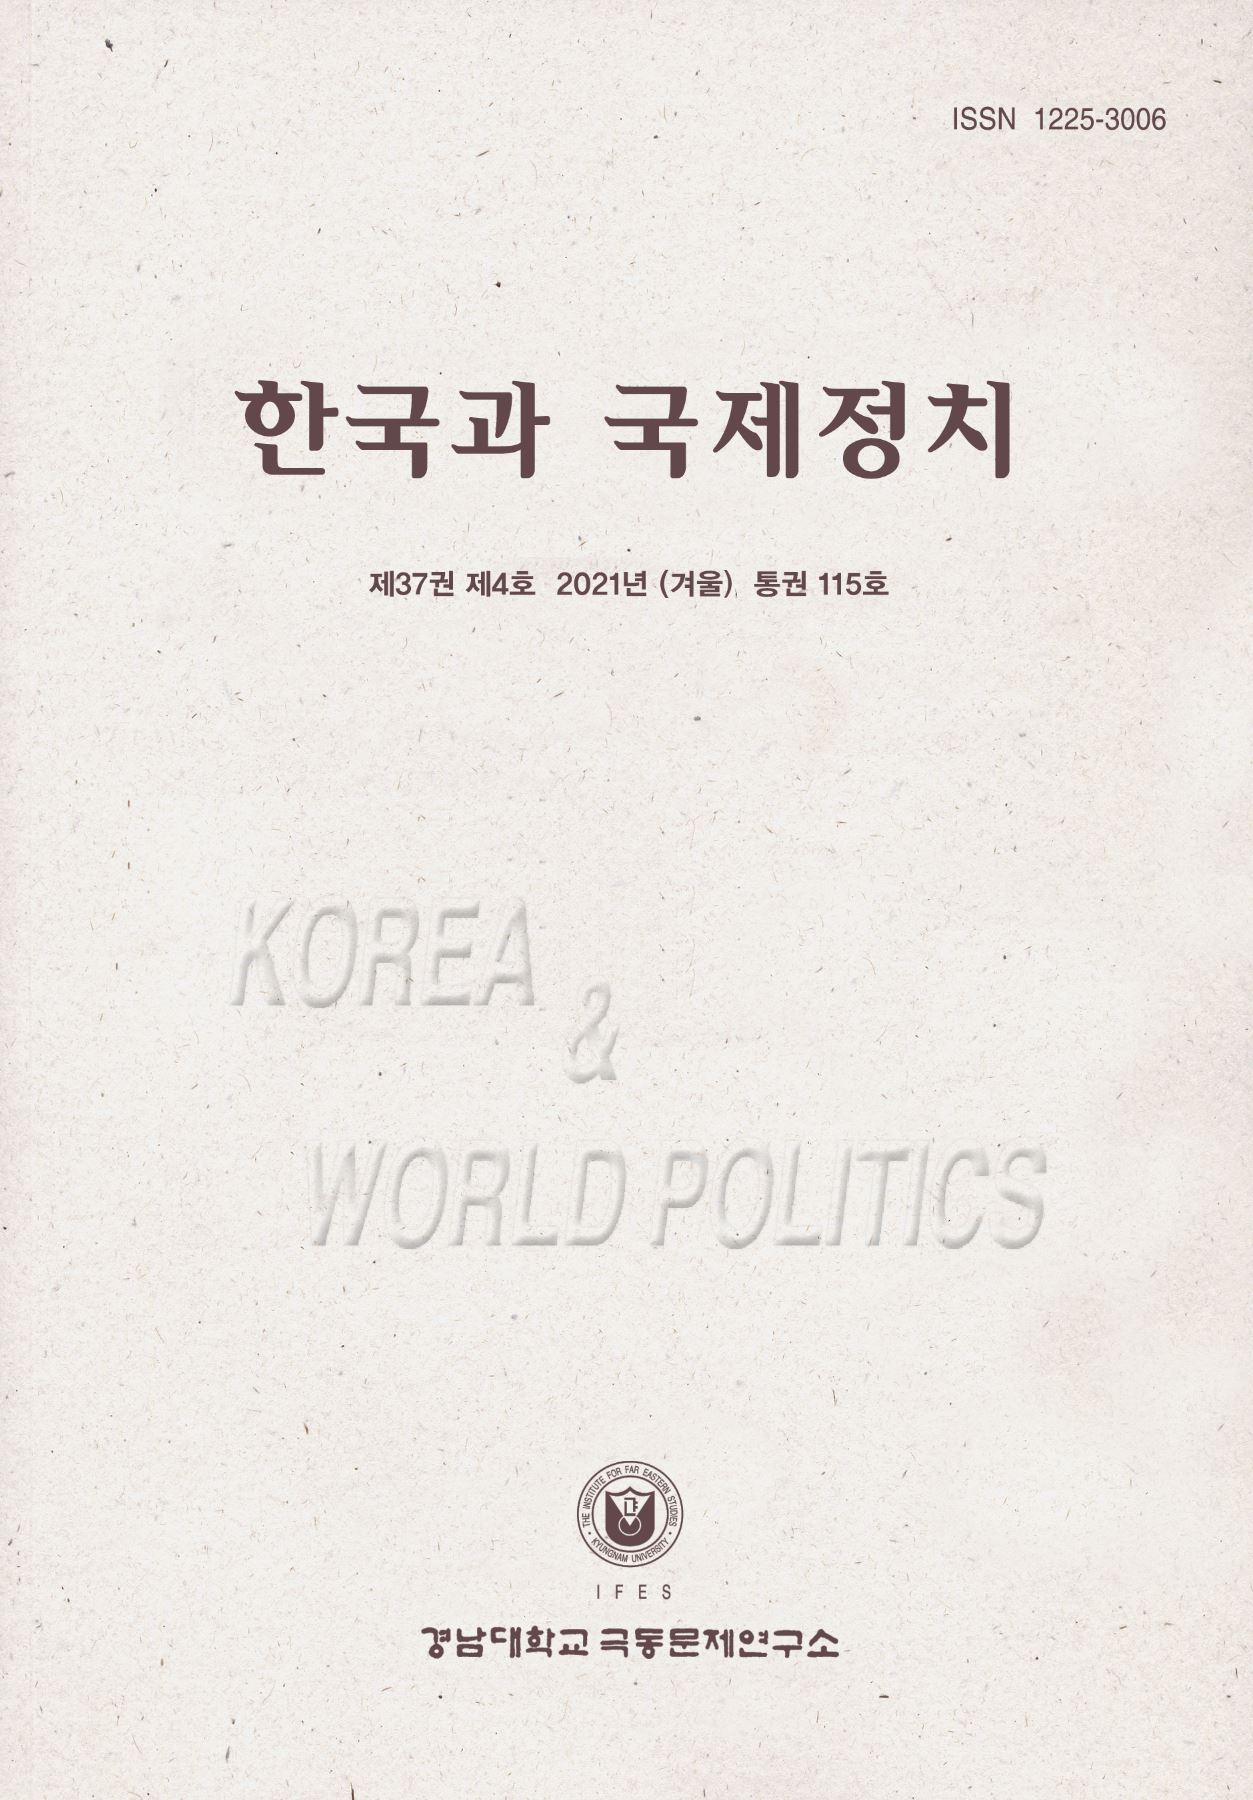 Korea and World Politics, Vol.37, No.4